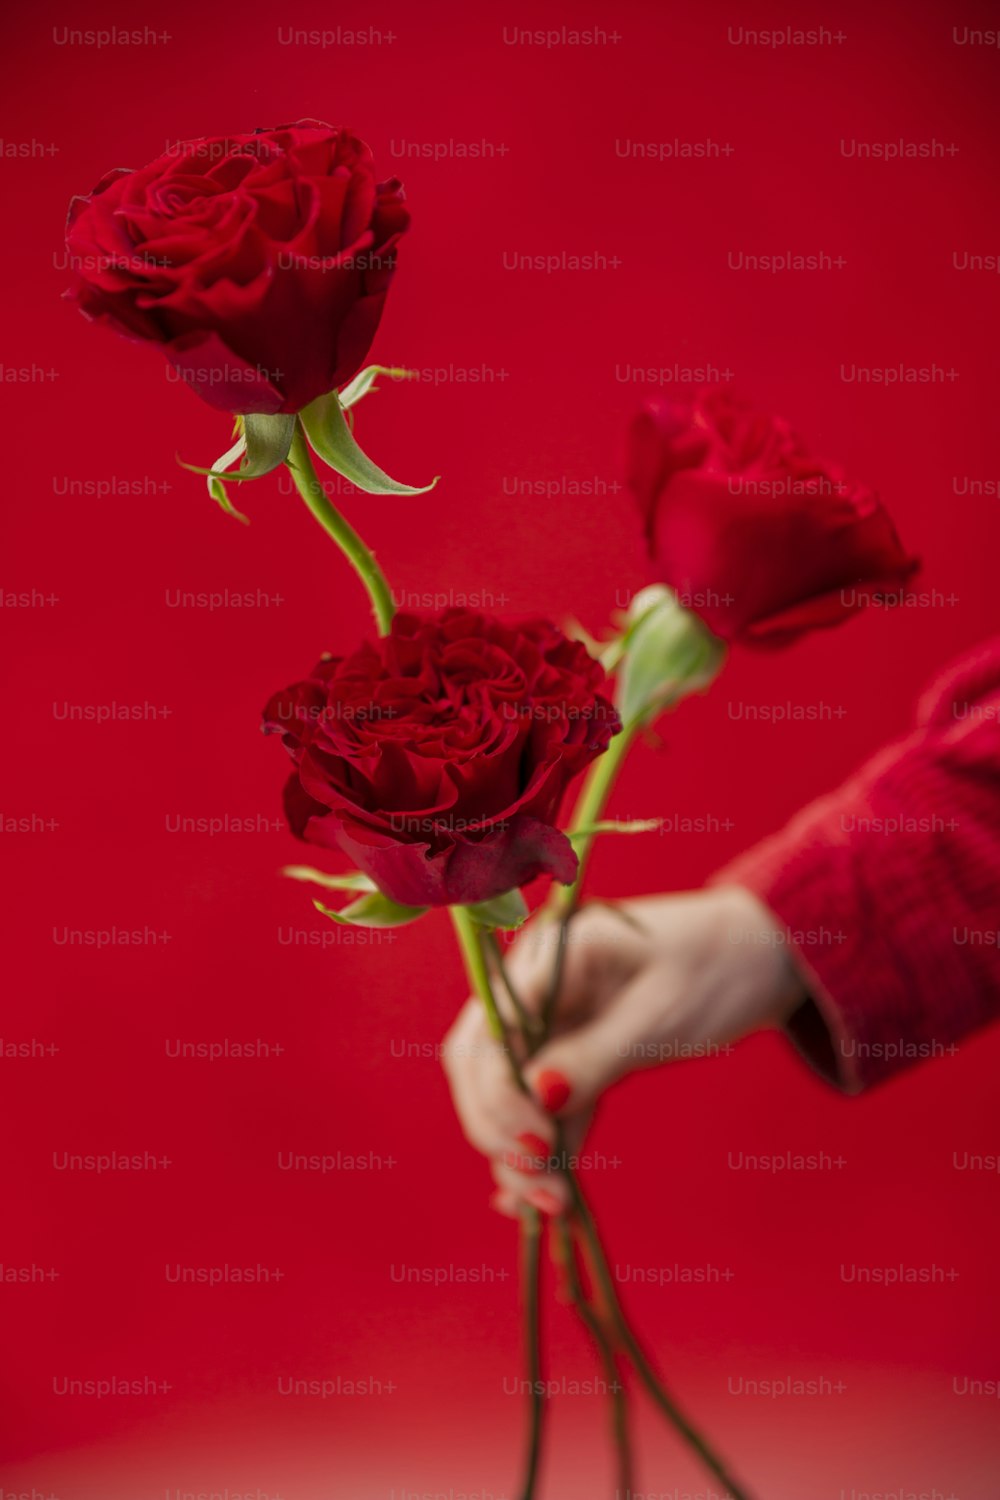 una persona sosteniendo tres rosas rojas en la mano